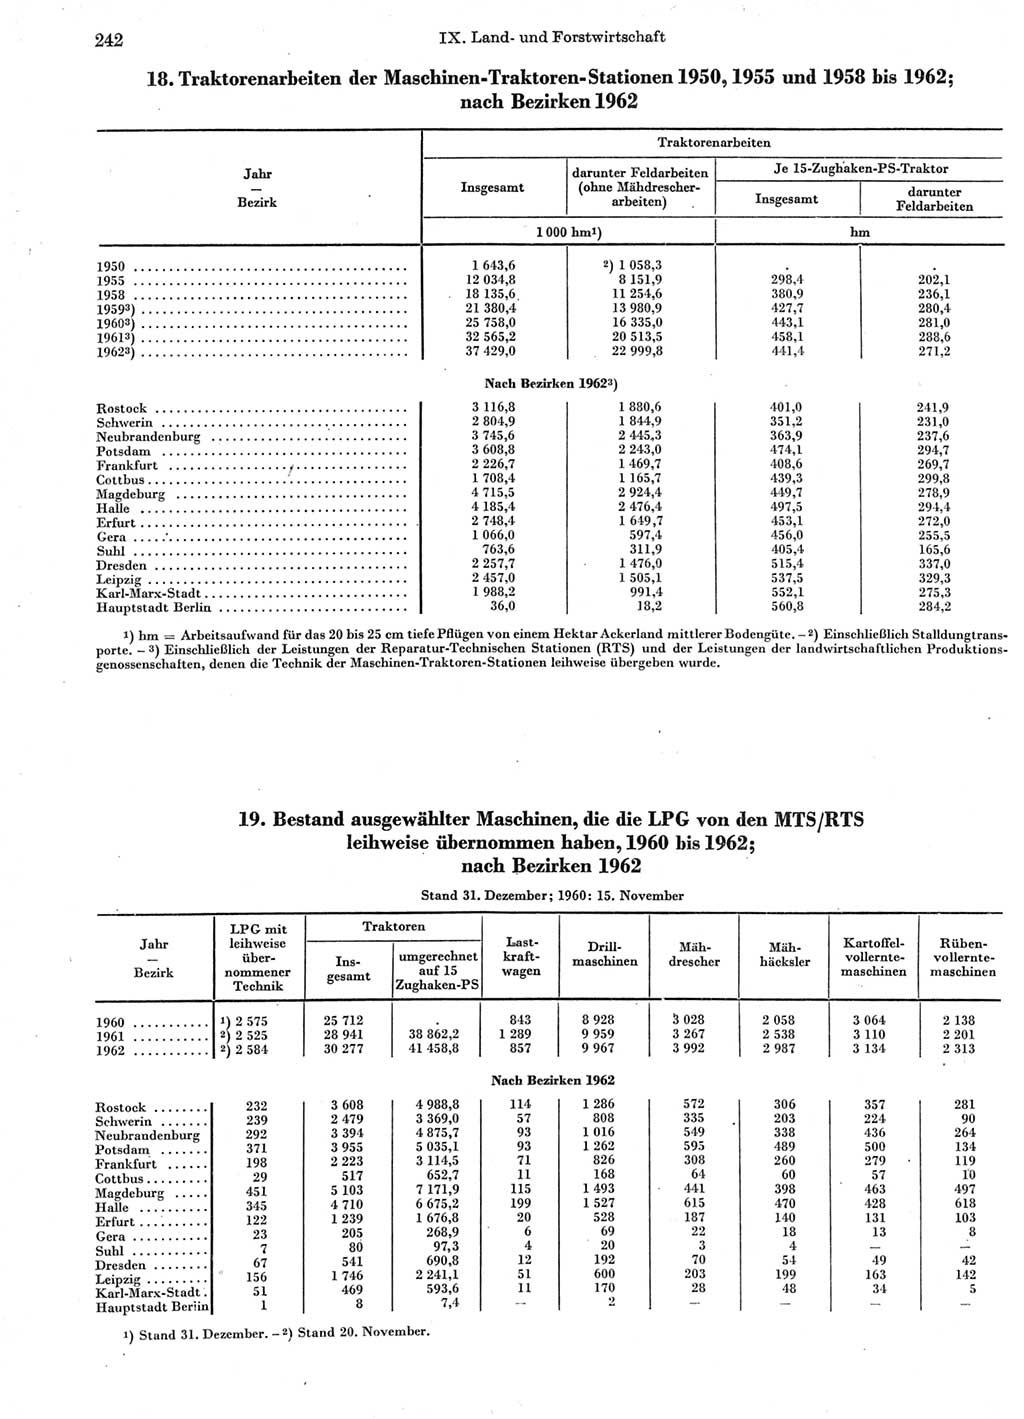 Statistisches Jahrbuch der Deutschen Demokratischen Republik (DDR) 1963, Seite 242 (Stat. Jb. DDR 1963, S. 242)